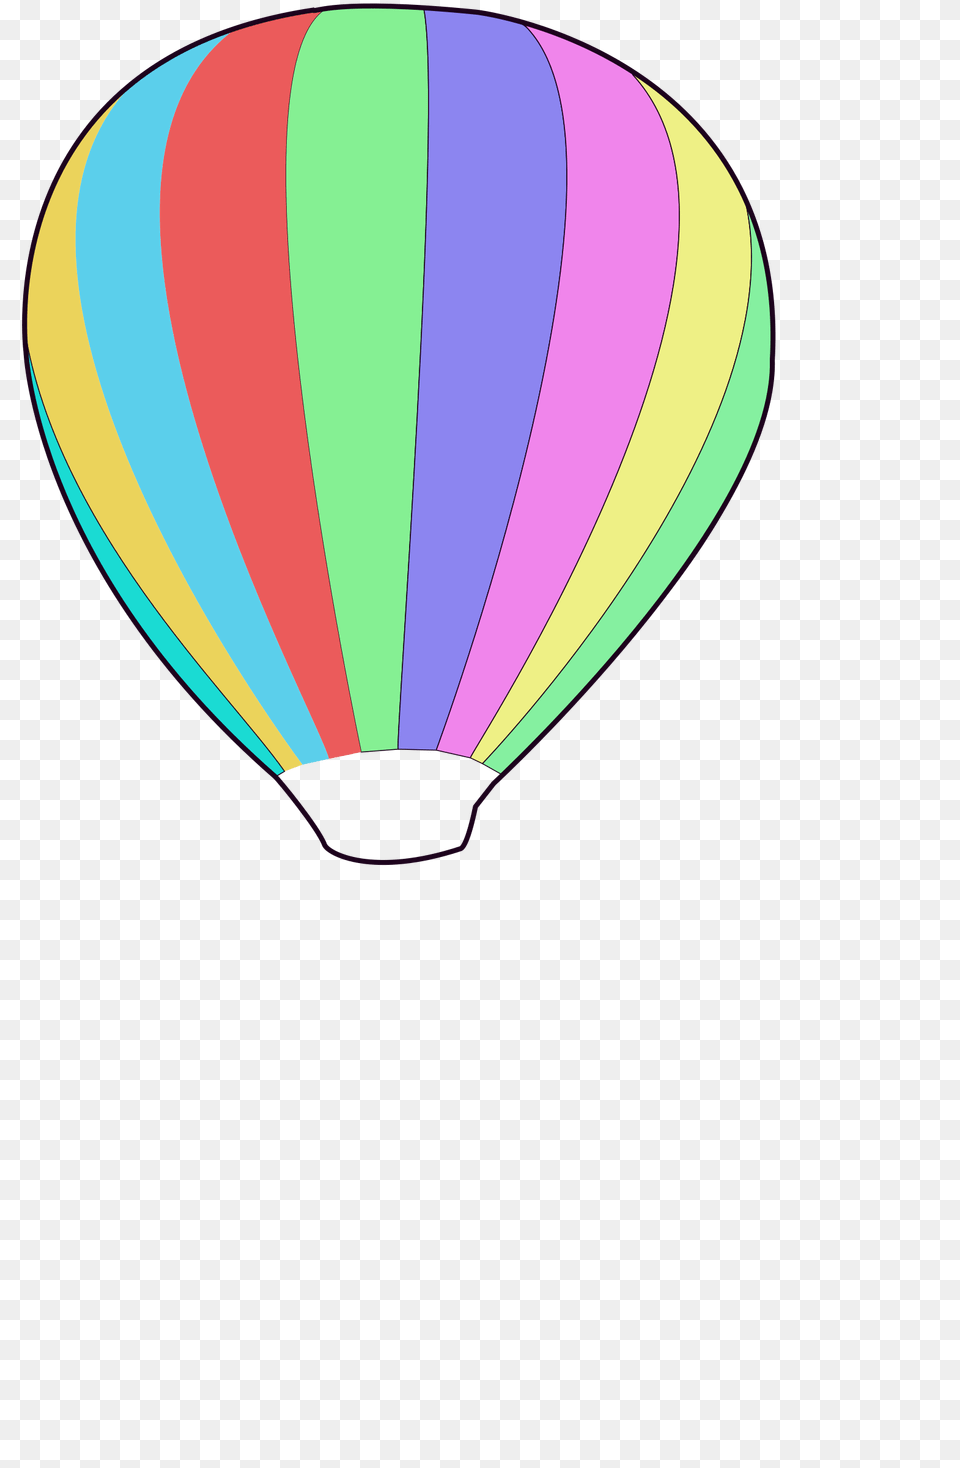 Clipart, Aircraft, Transportation, Vehicle, Hot Air Balloon Png Image